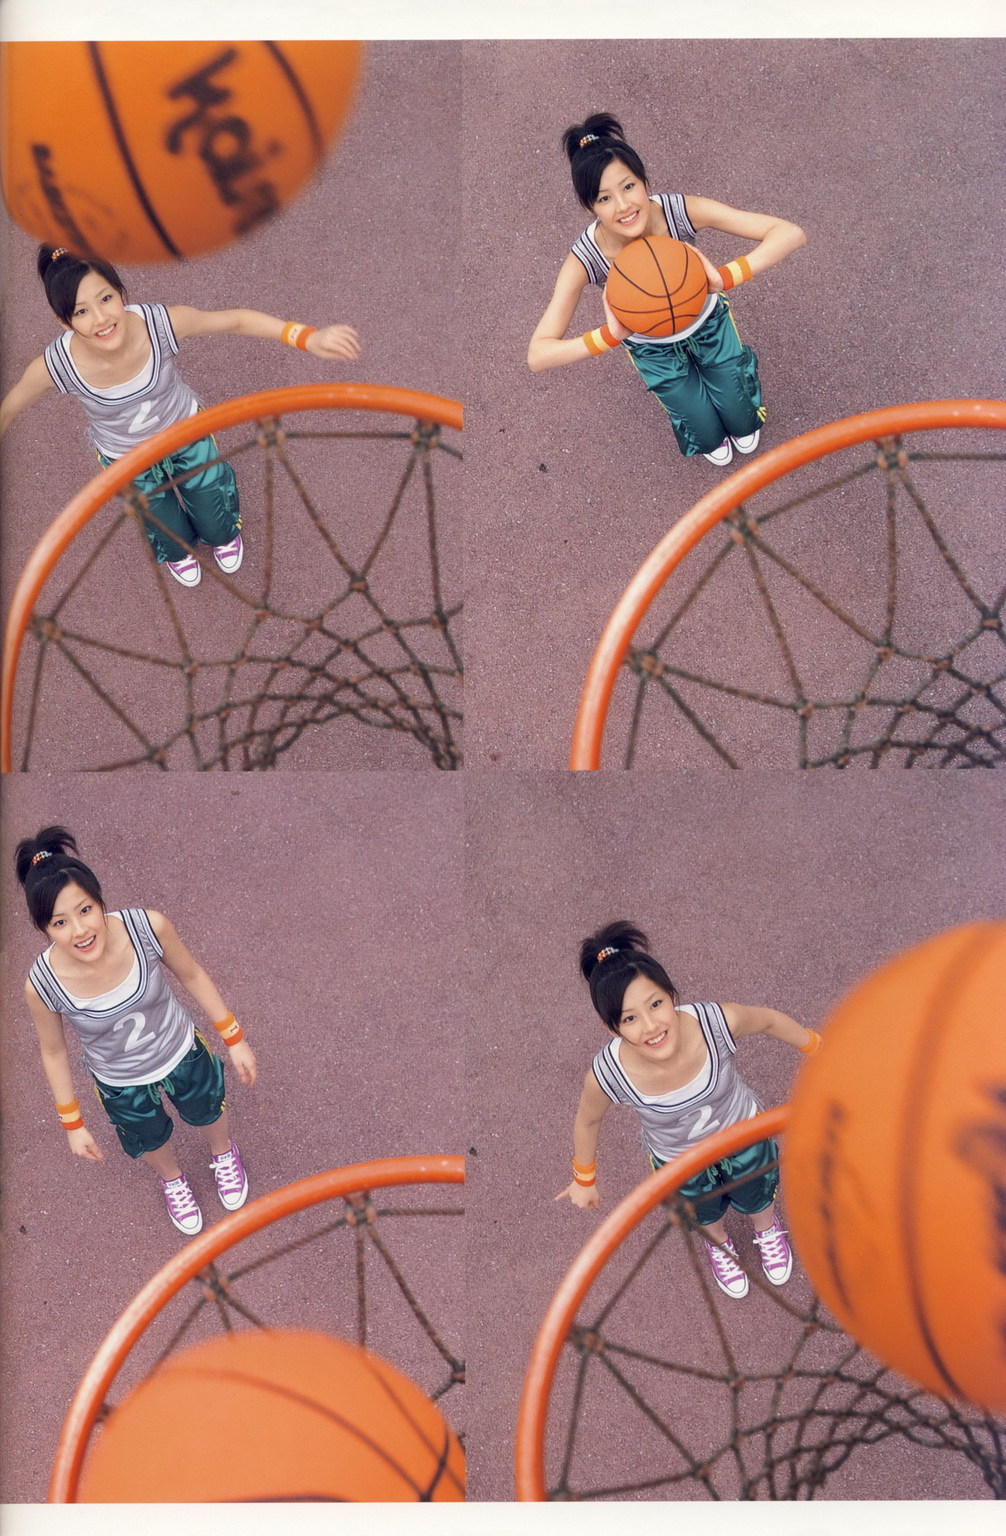 Basketball <3